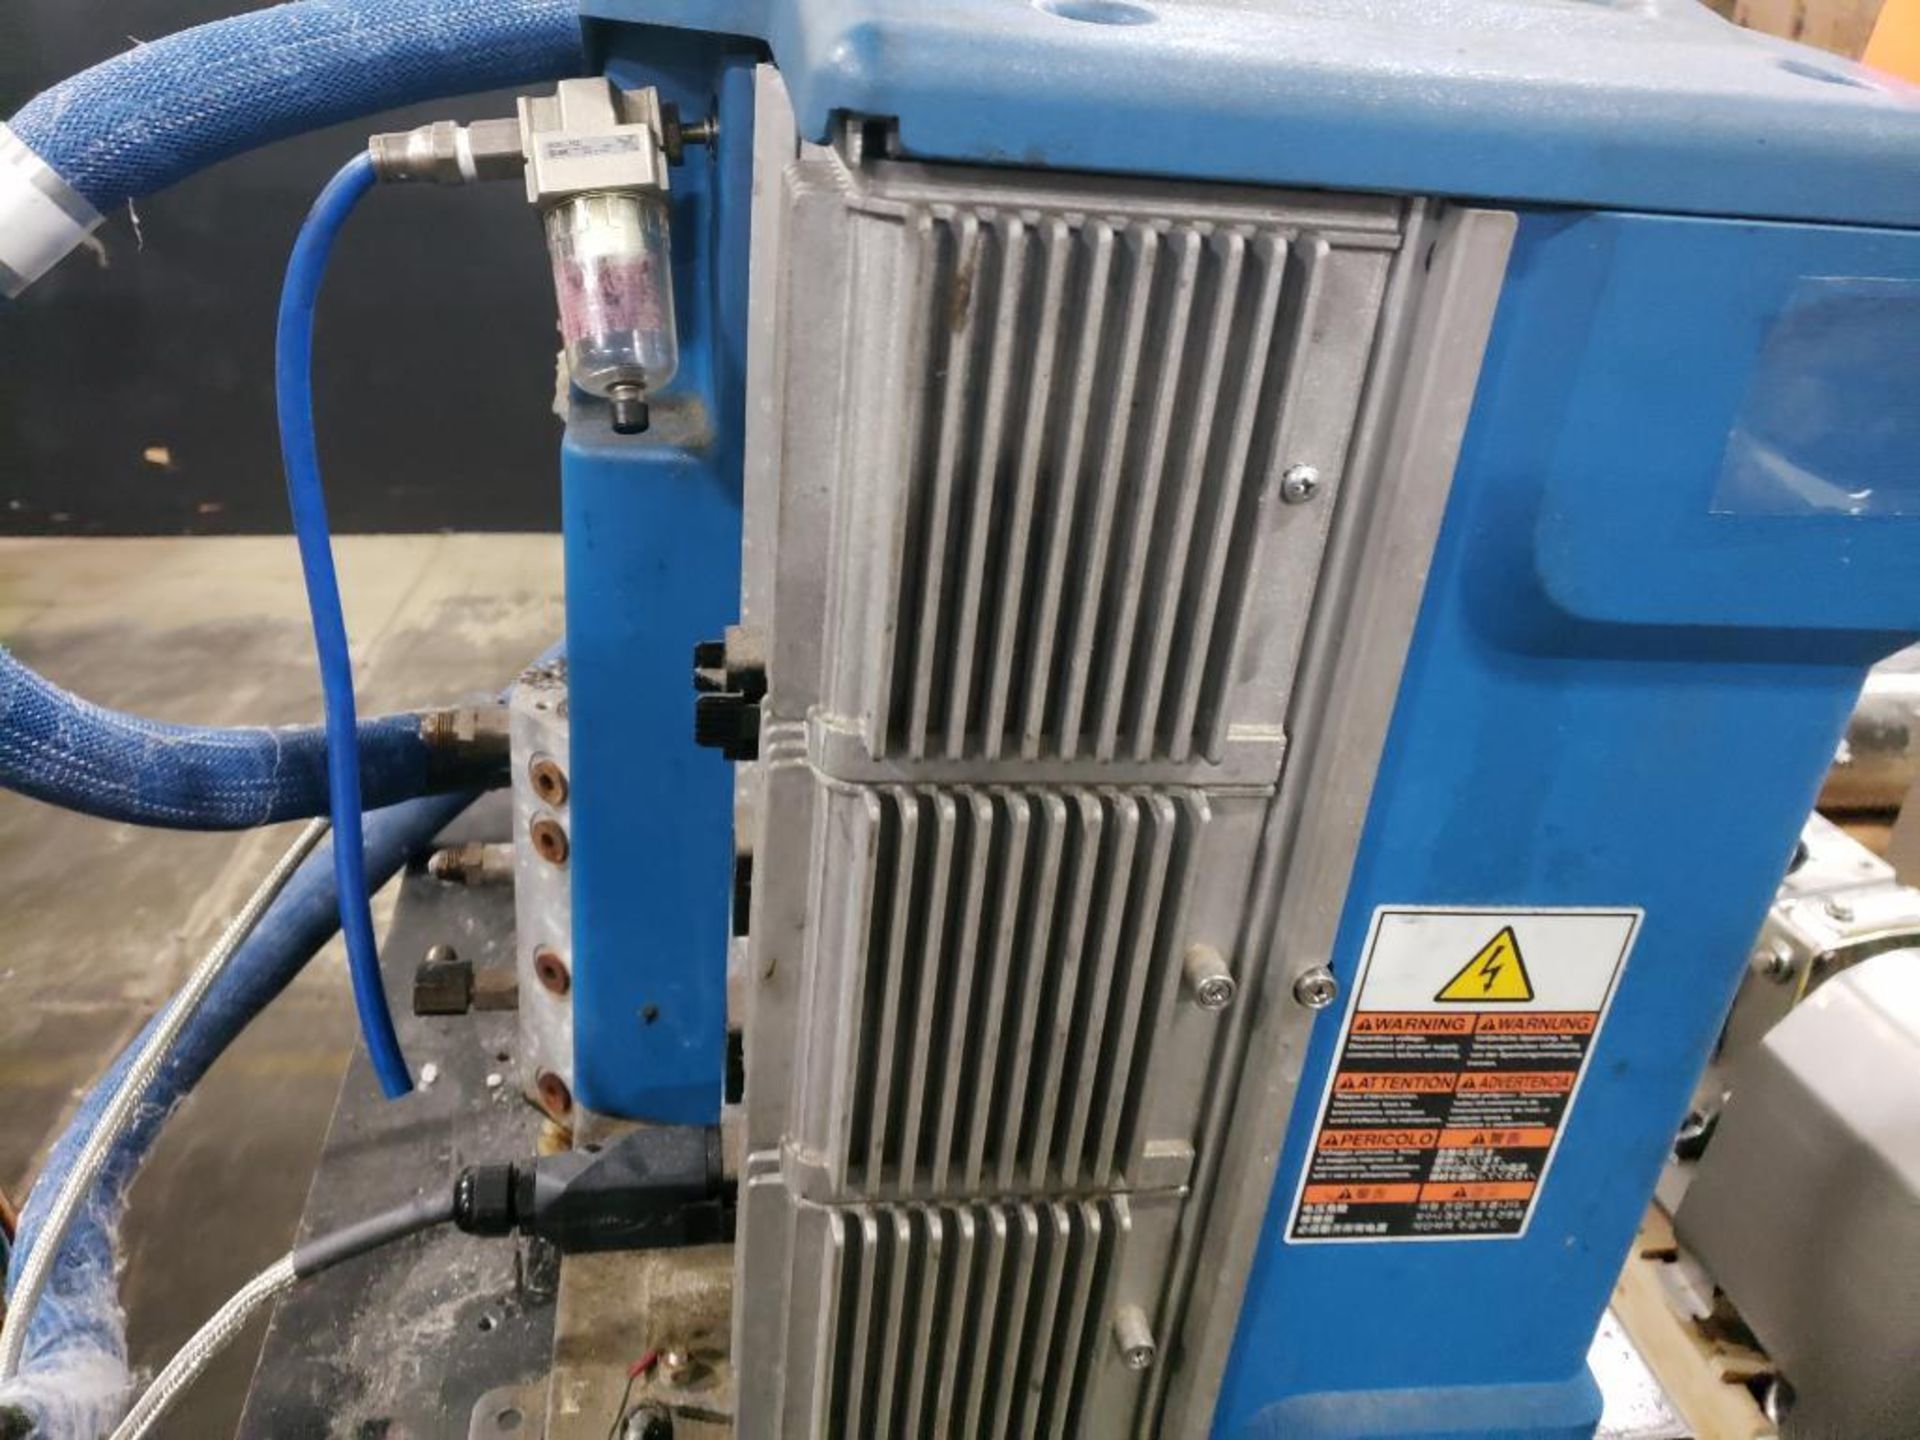 Nordson hot melt glue machine. Model Pro Blue Liberty 14. - Image 9 of 10